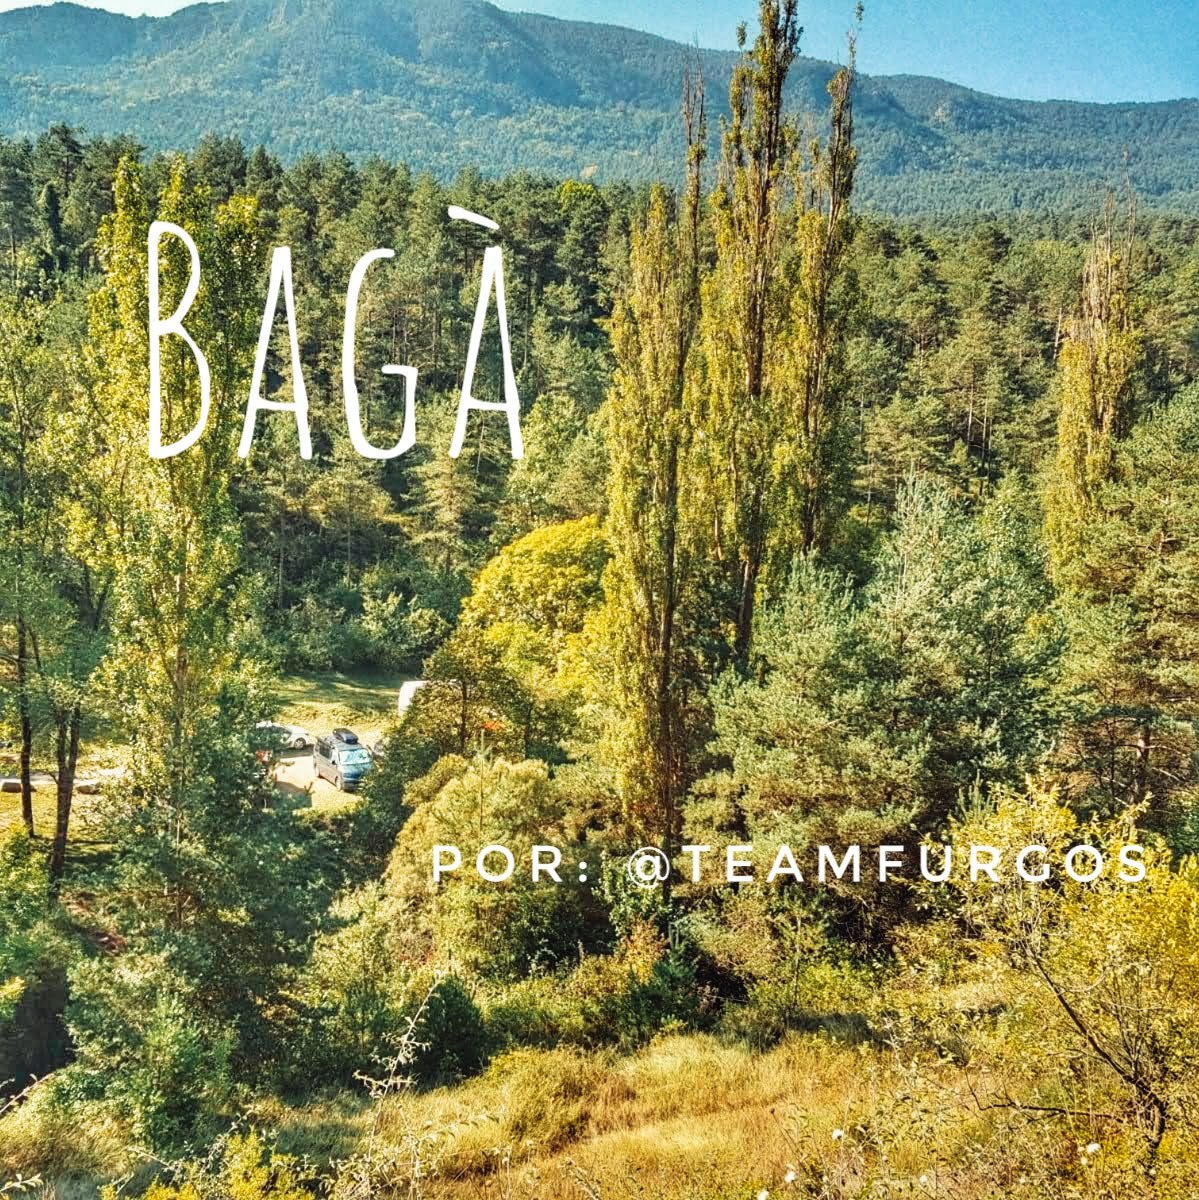 Lee más sobre el artículo Bagà en furgo por la ruta dels Empedrats por @teamfurgos